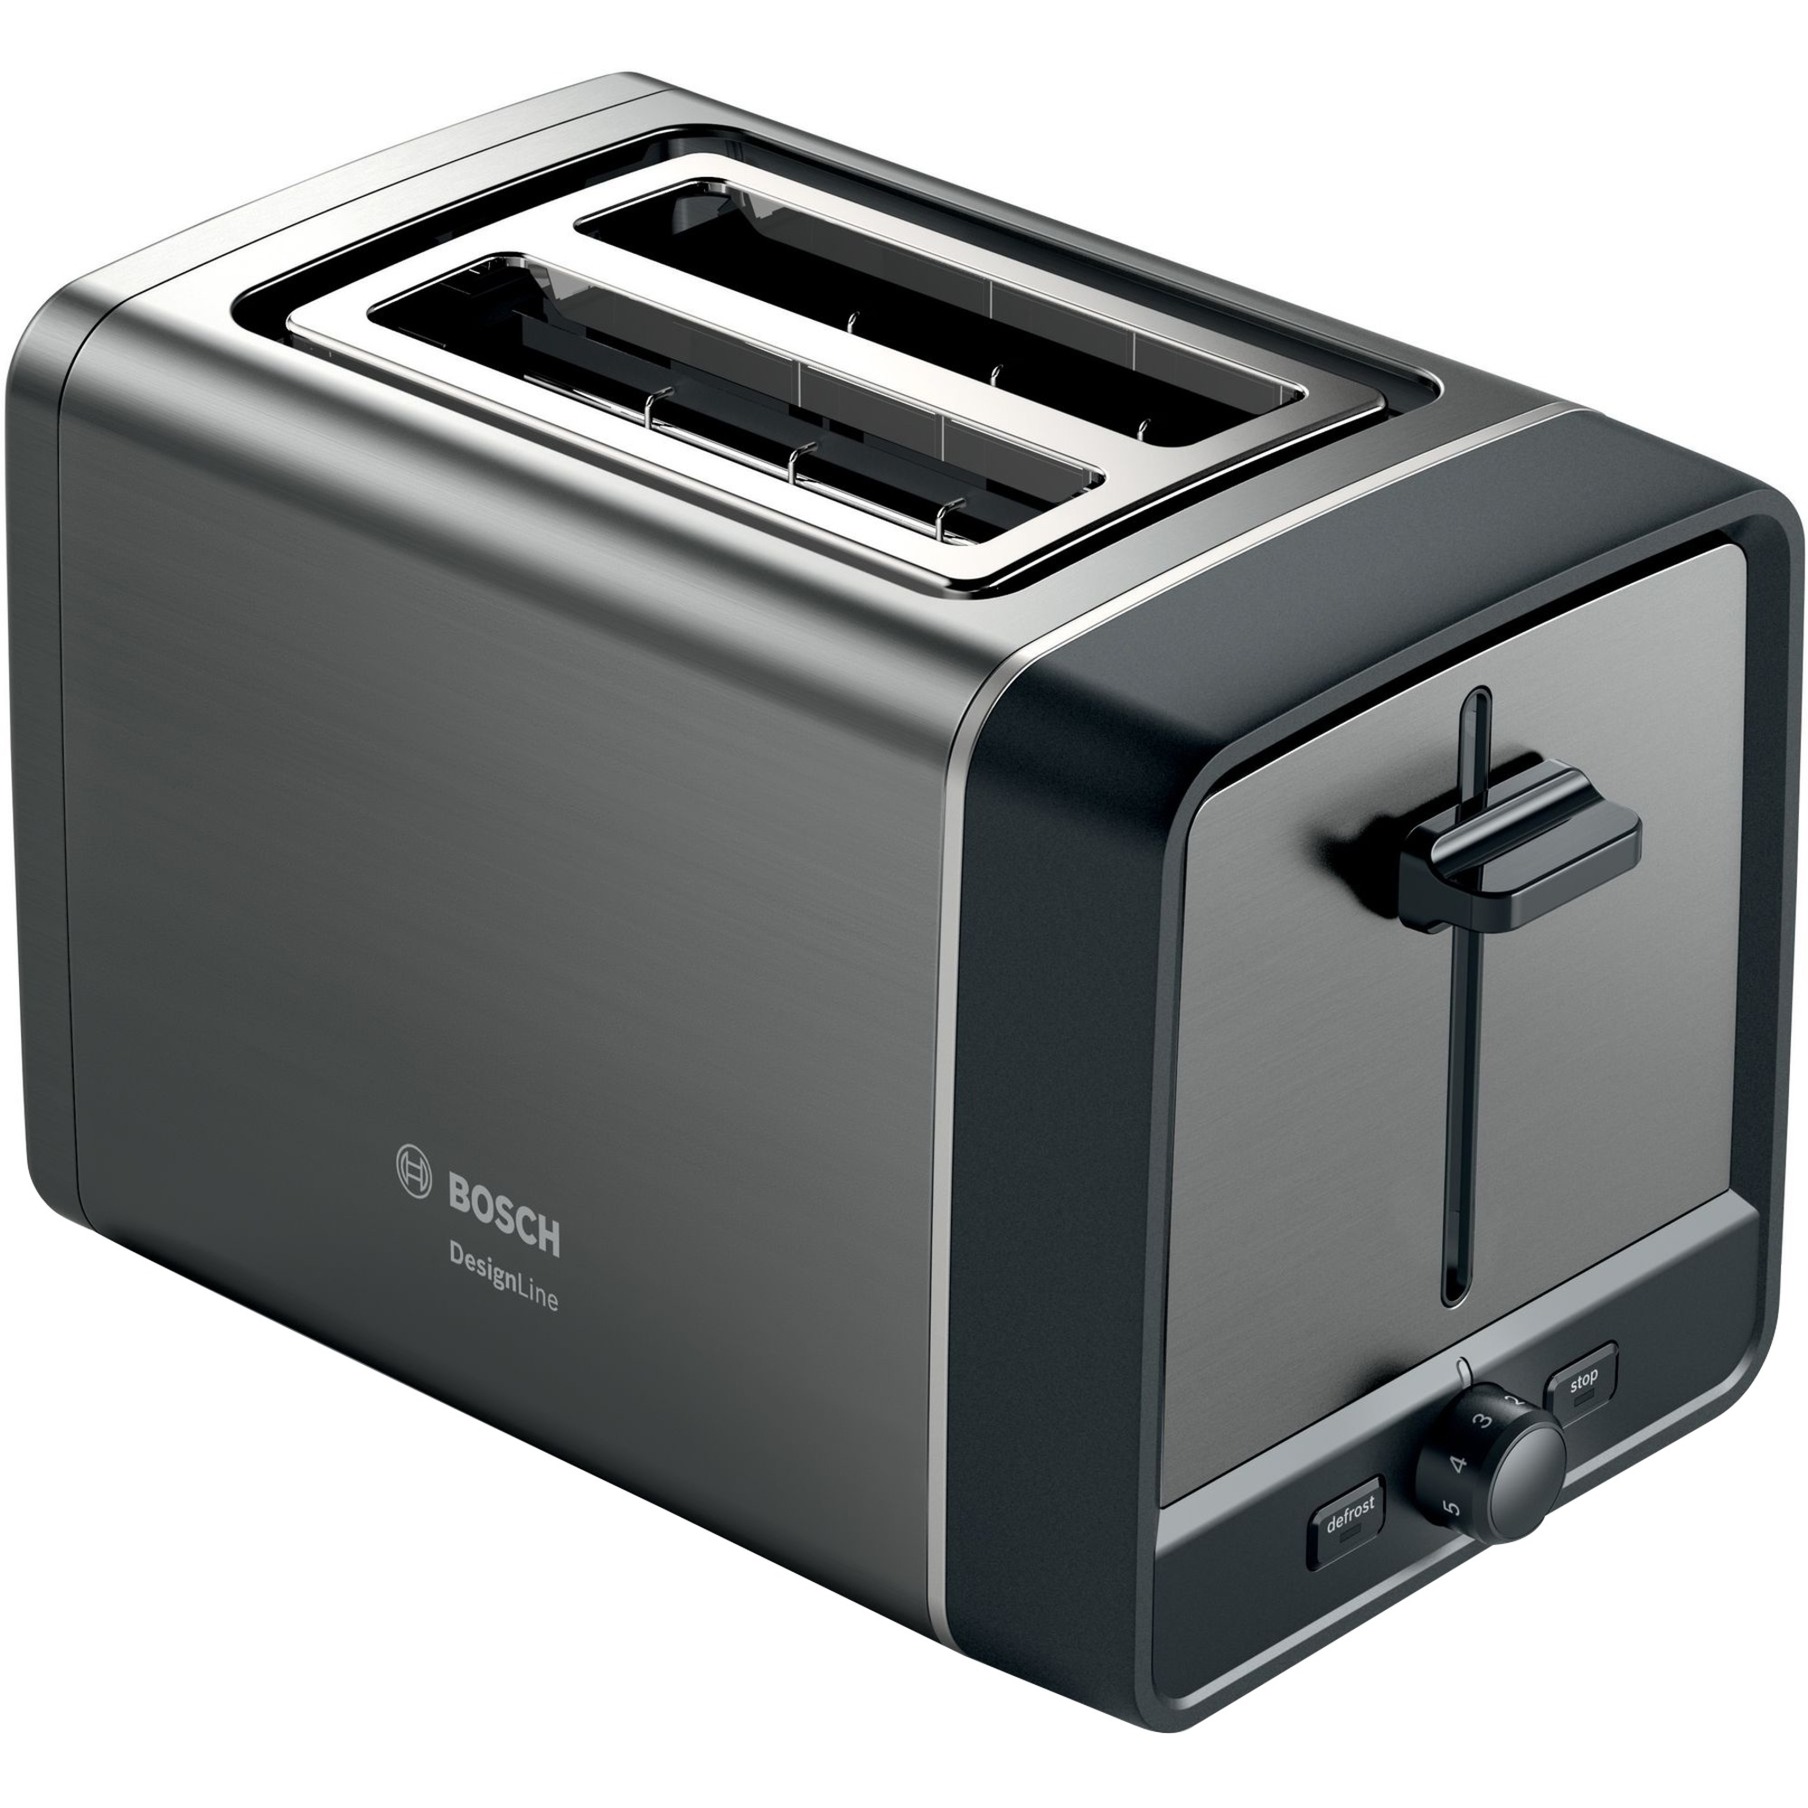 Image of Alternate - Kompakt-Toaster DesignLine TAT5P425DE online einkaufen bei Alternate